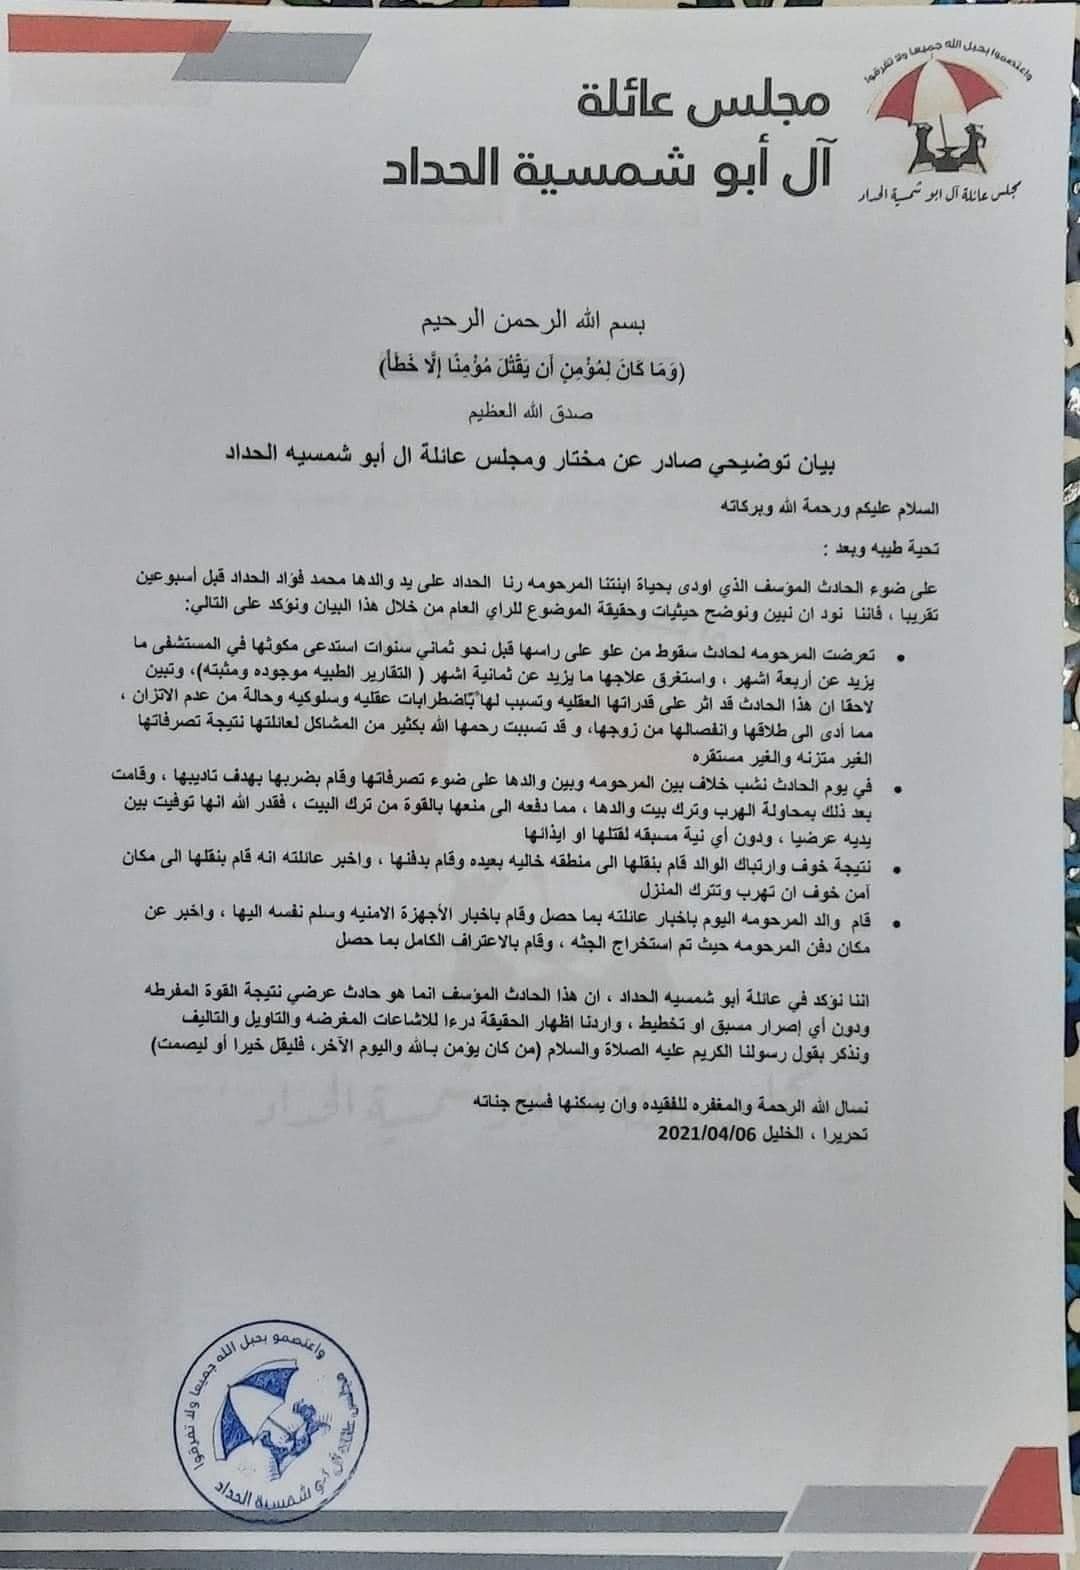 عائلة "أبو شمسية" تُصدر بيانًا حول تفاصيل مقتل فتاة من لوزا في الخليل